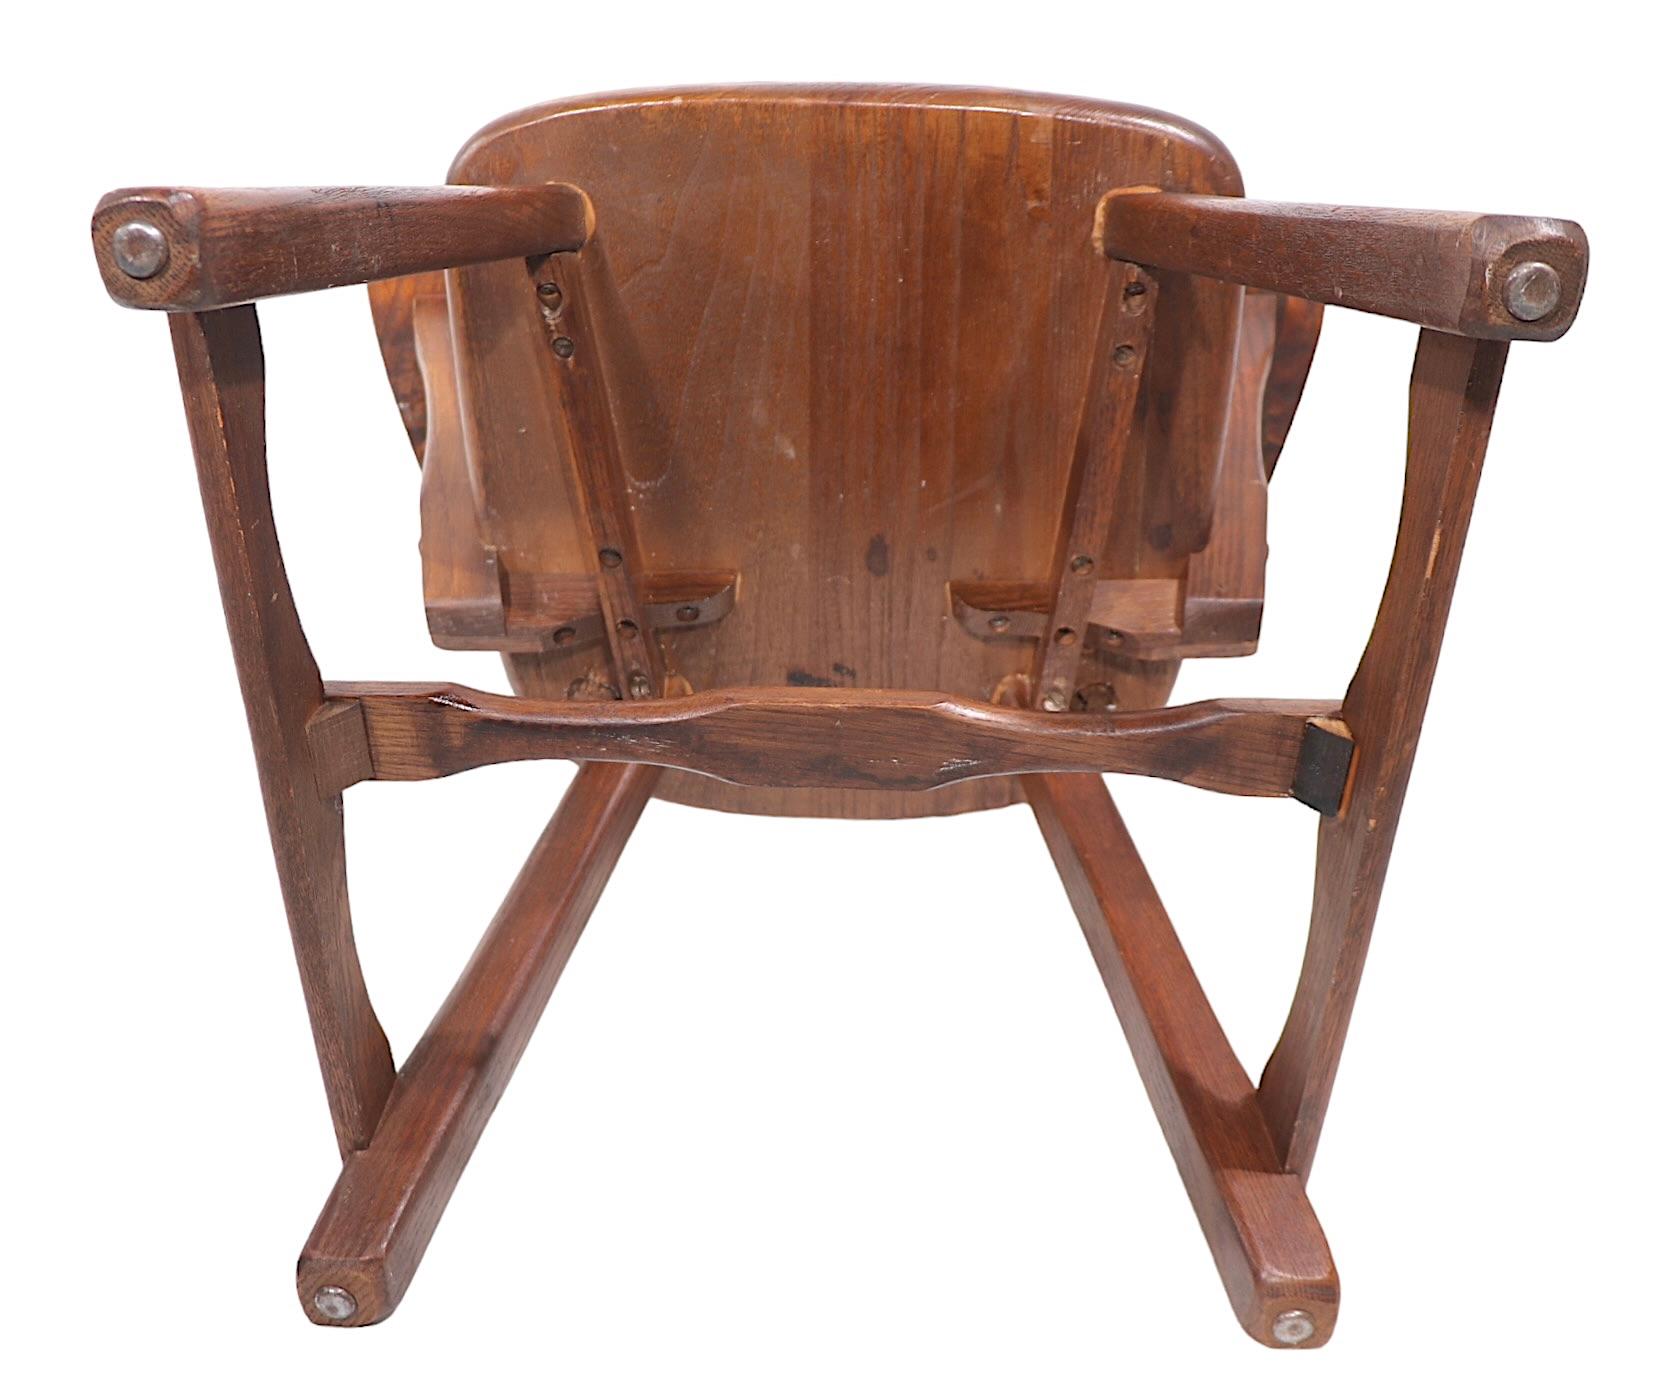  Meubles rustiques américains classiques - salon,  fauteuil,  fabriqué par la Old Hickory Furniture Company vers les années 1940. La chaise présente une structure en chêne massif et un dossier en osier tressé. Elle est en très bon état, d'origine,